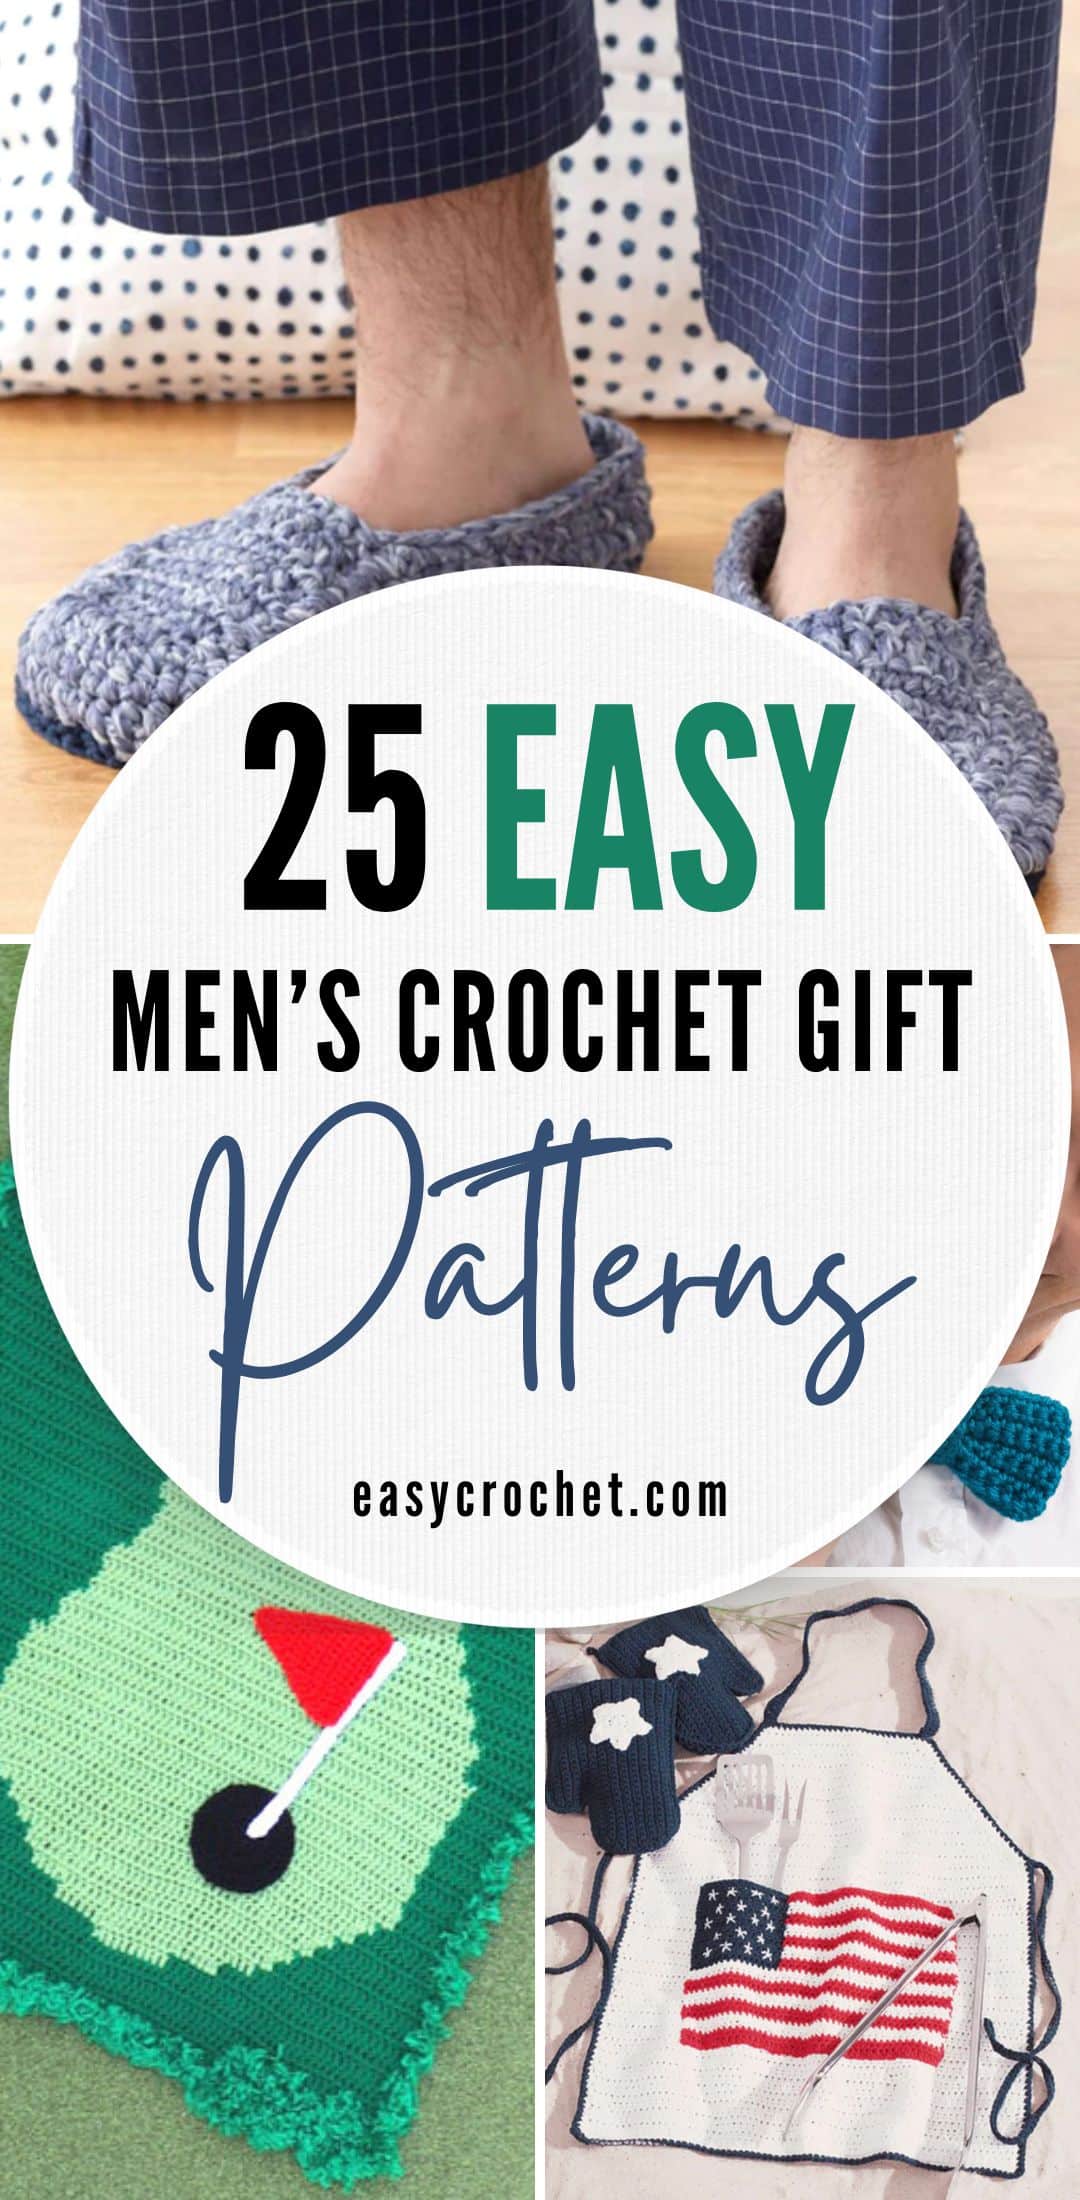 men's crochet gift patterns